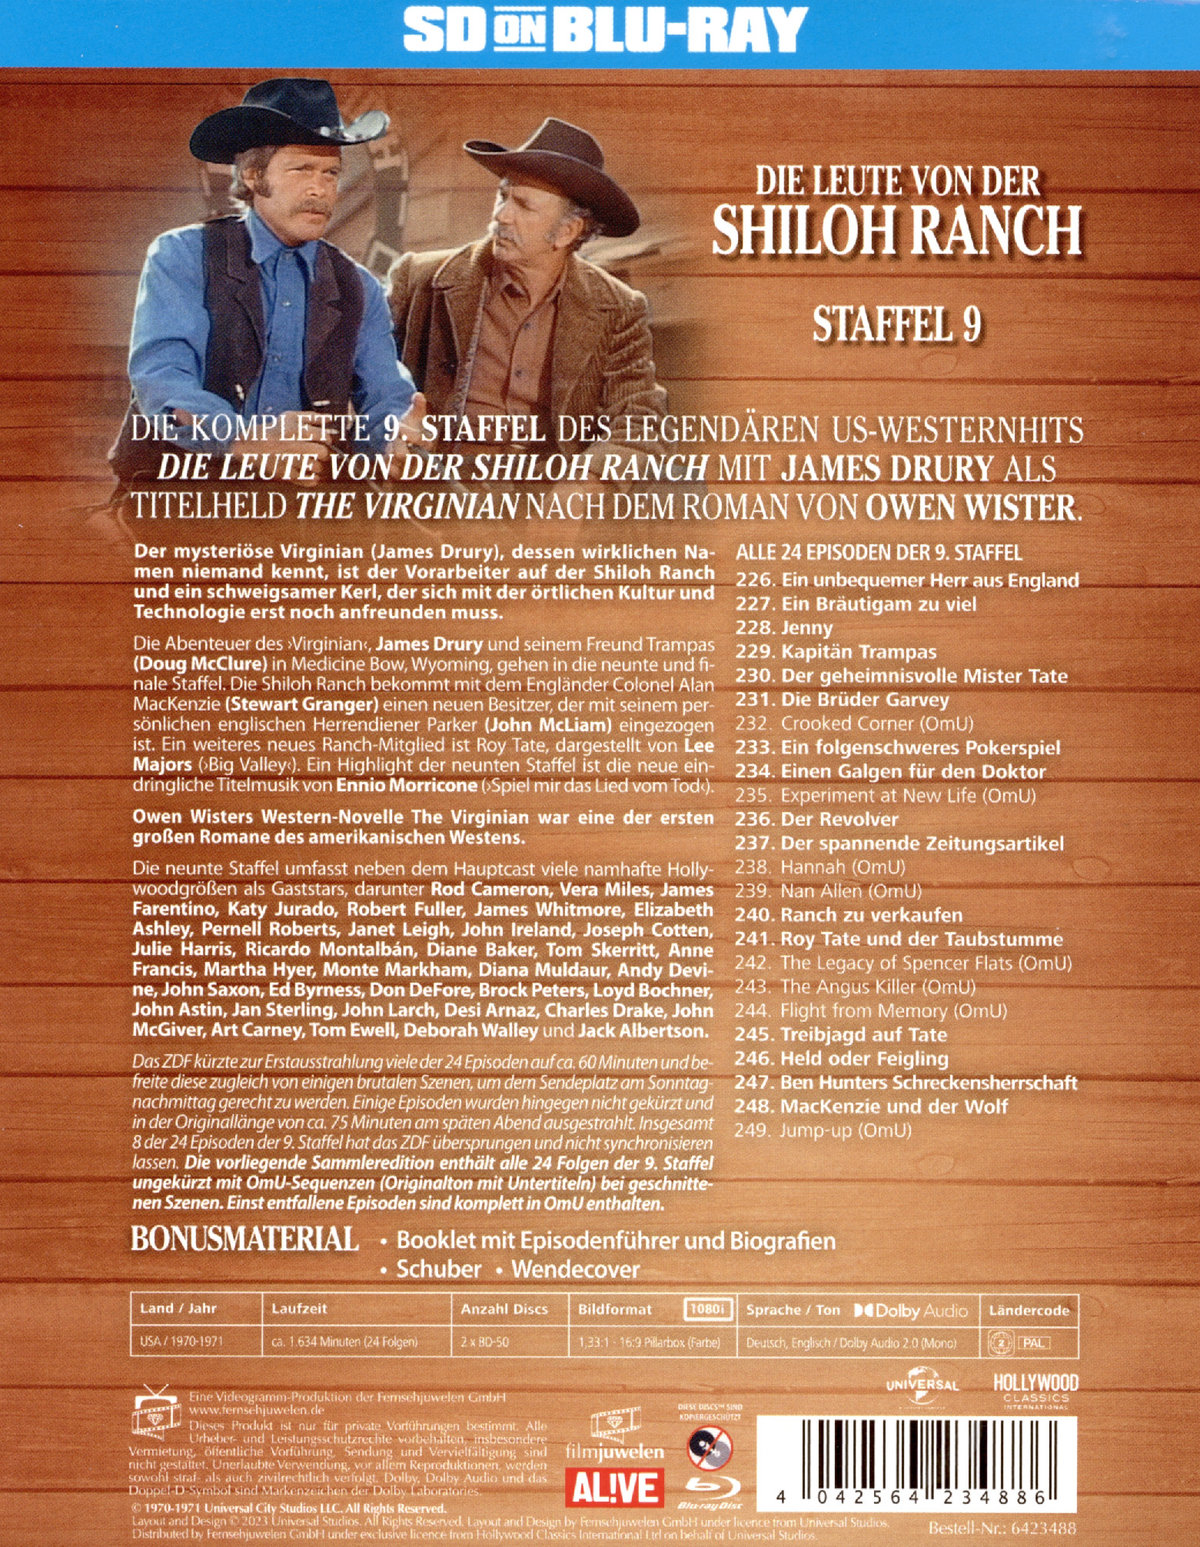 Leute von der Shiloh Ranch, Die - Staffel 9 (blu-ray)